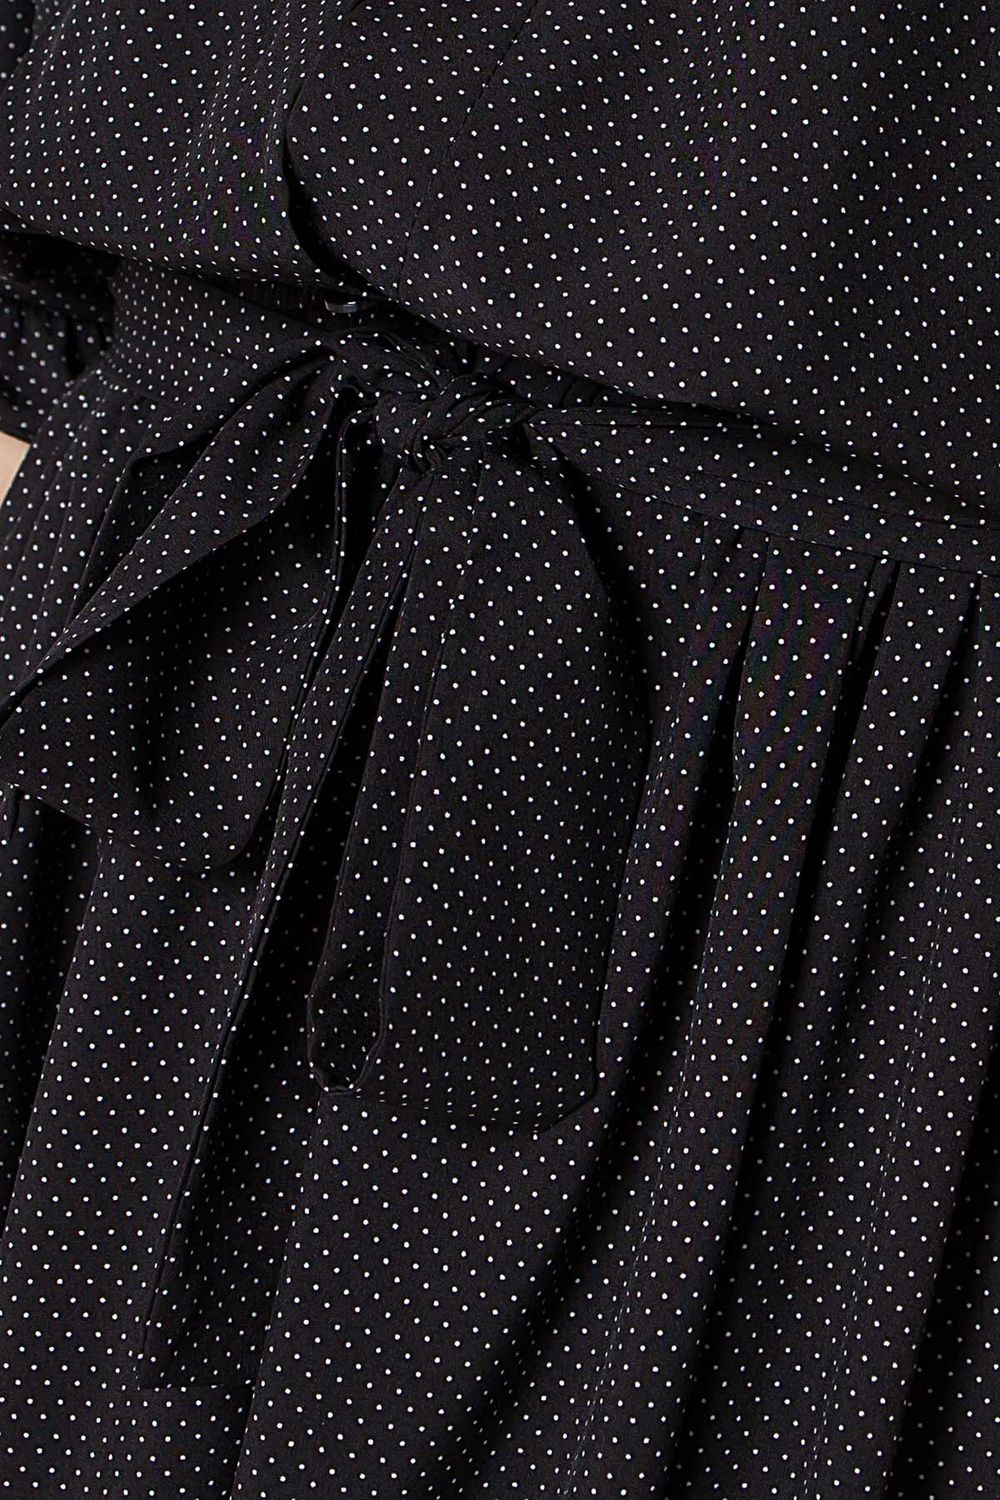 Плаття сорочка в горошок чорне - фото